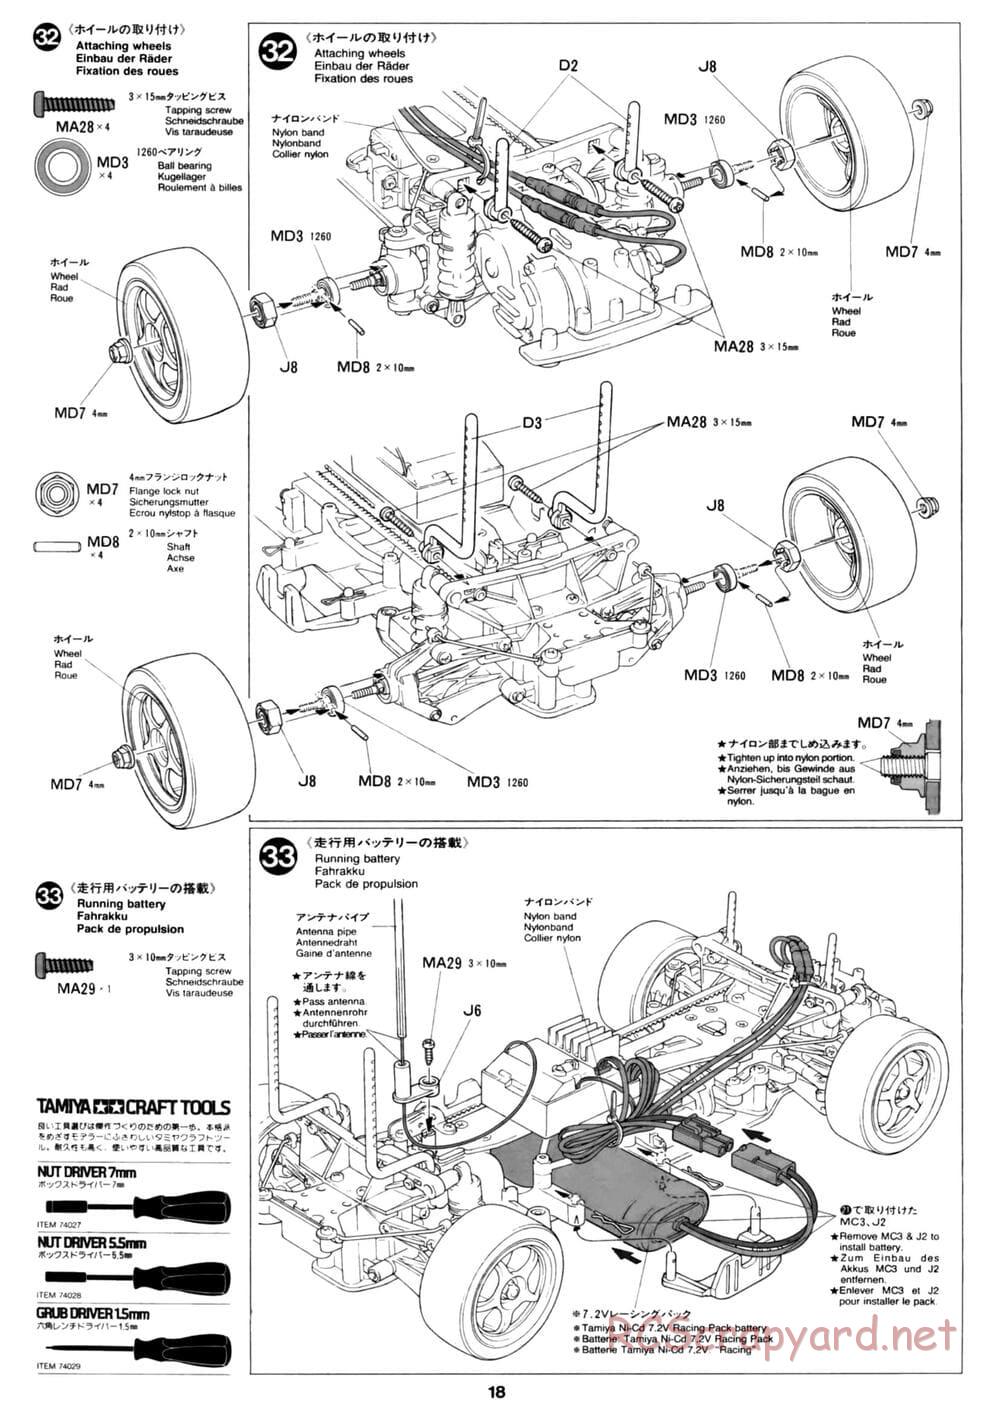 Tamiya - David Jun TA03F Pro Chassis - Manual - Page 18